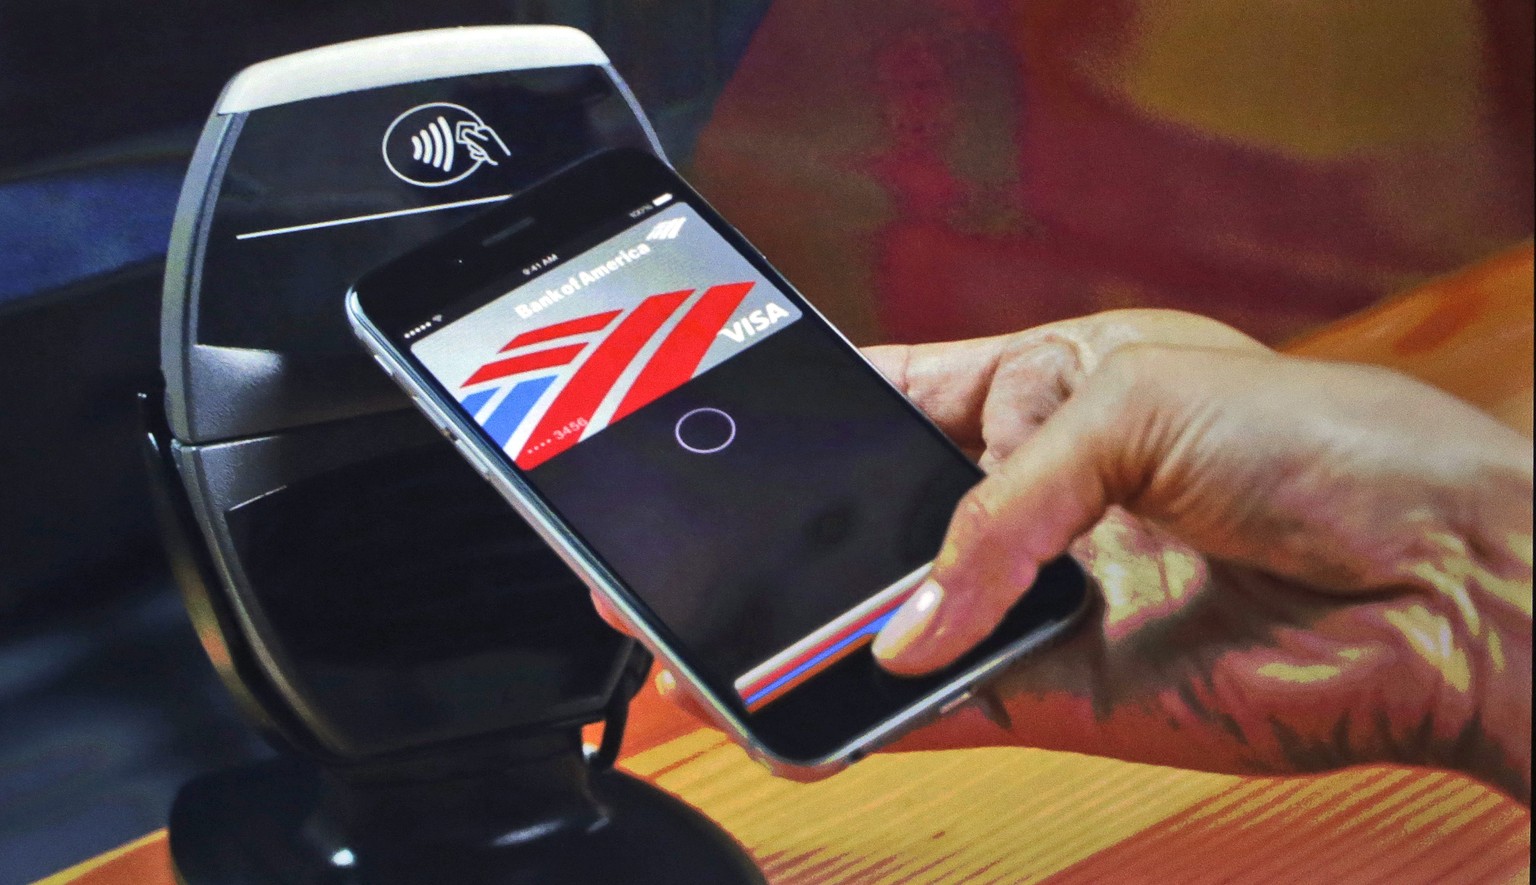 Mit dem iPhone 6 kann man künftig an der Ladenkasse bargeldlos bezahlen. Der Bezahlvorgang soll sicher sein und dauert kaum länger als ein Wimpernschlag.